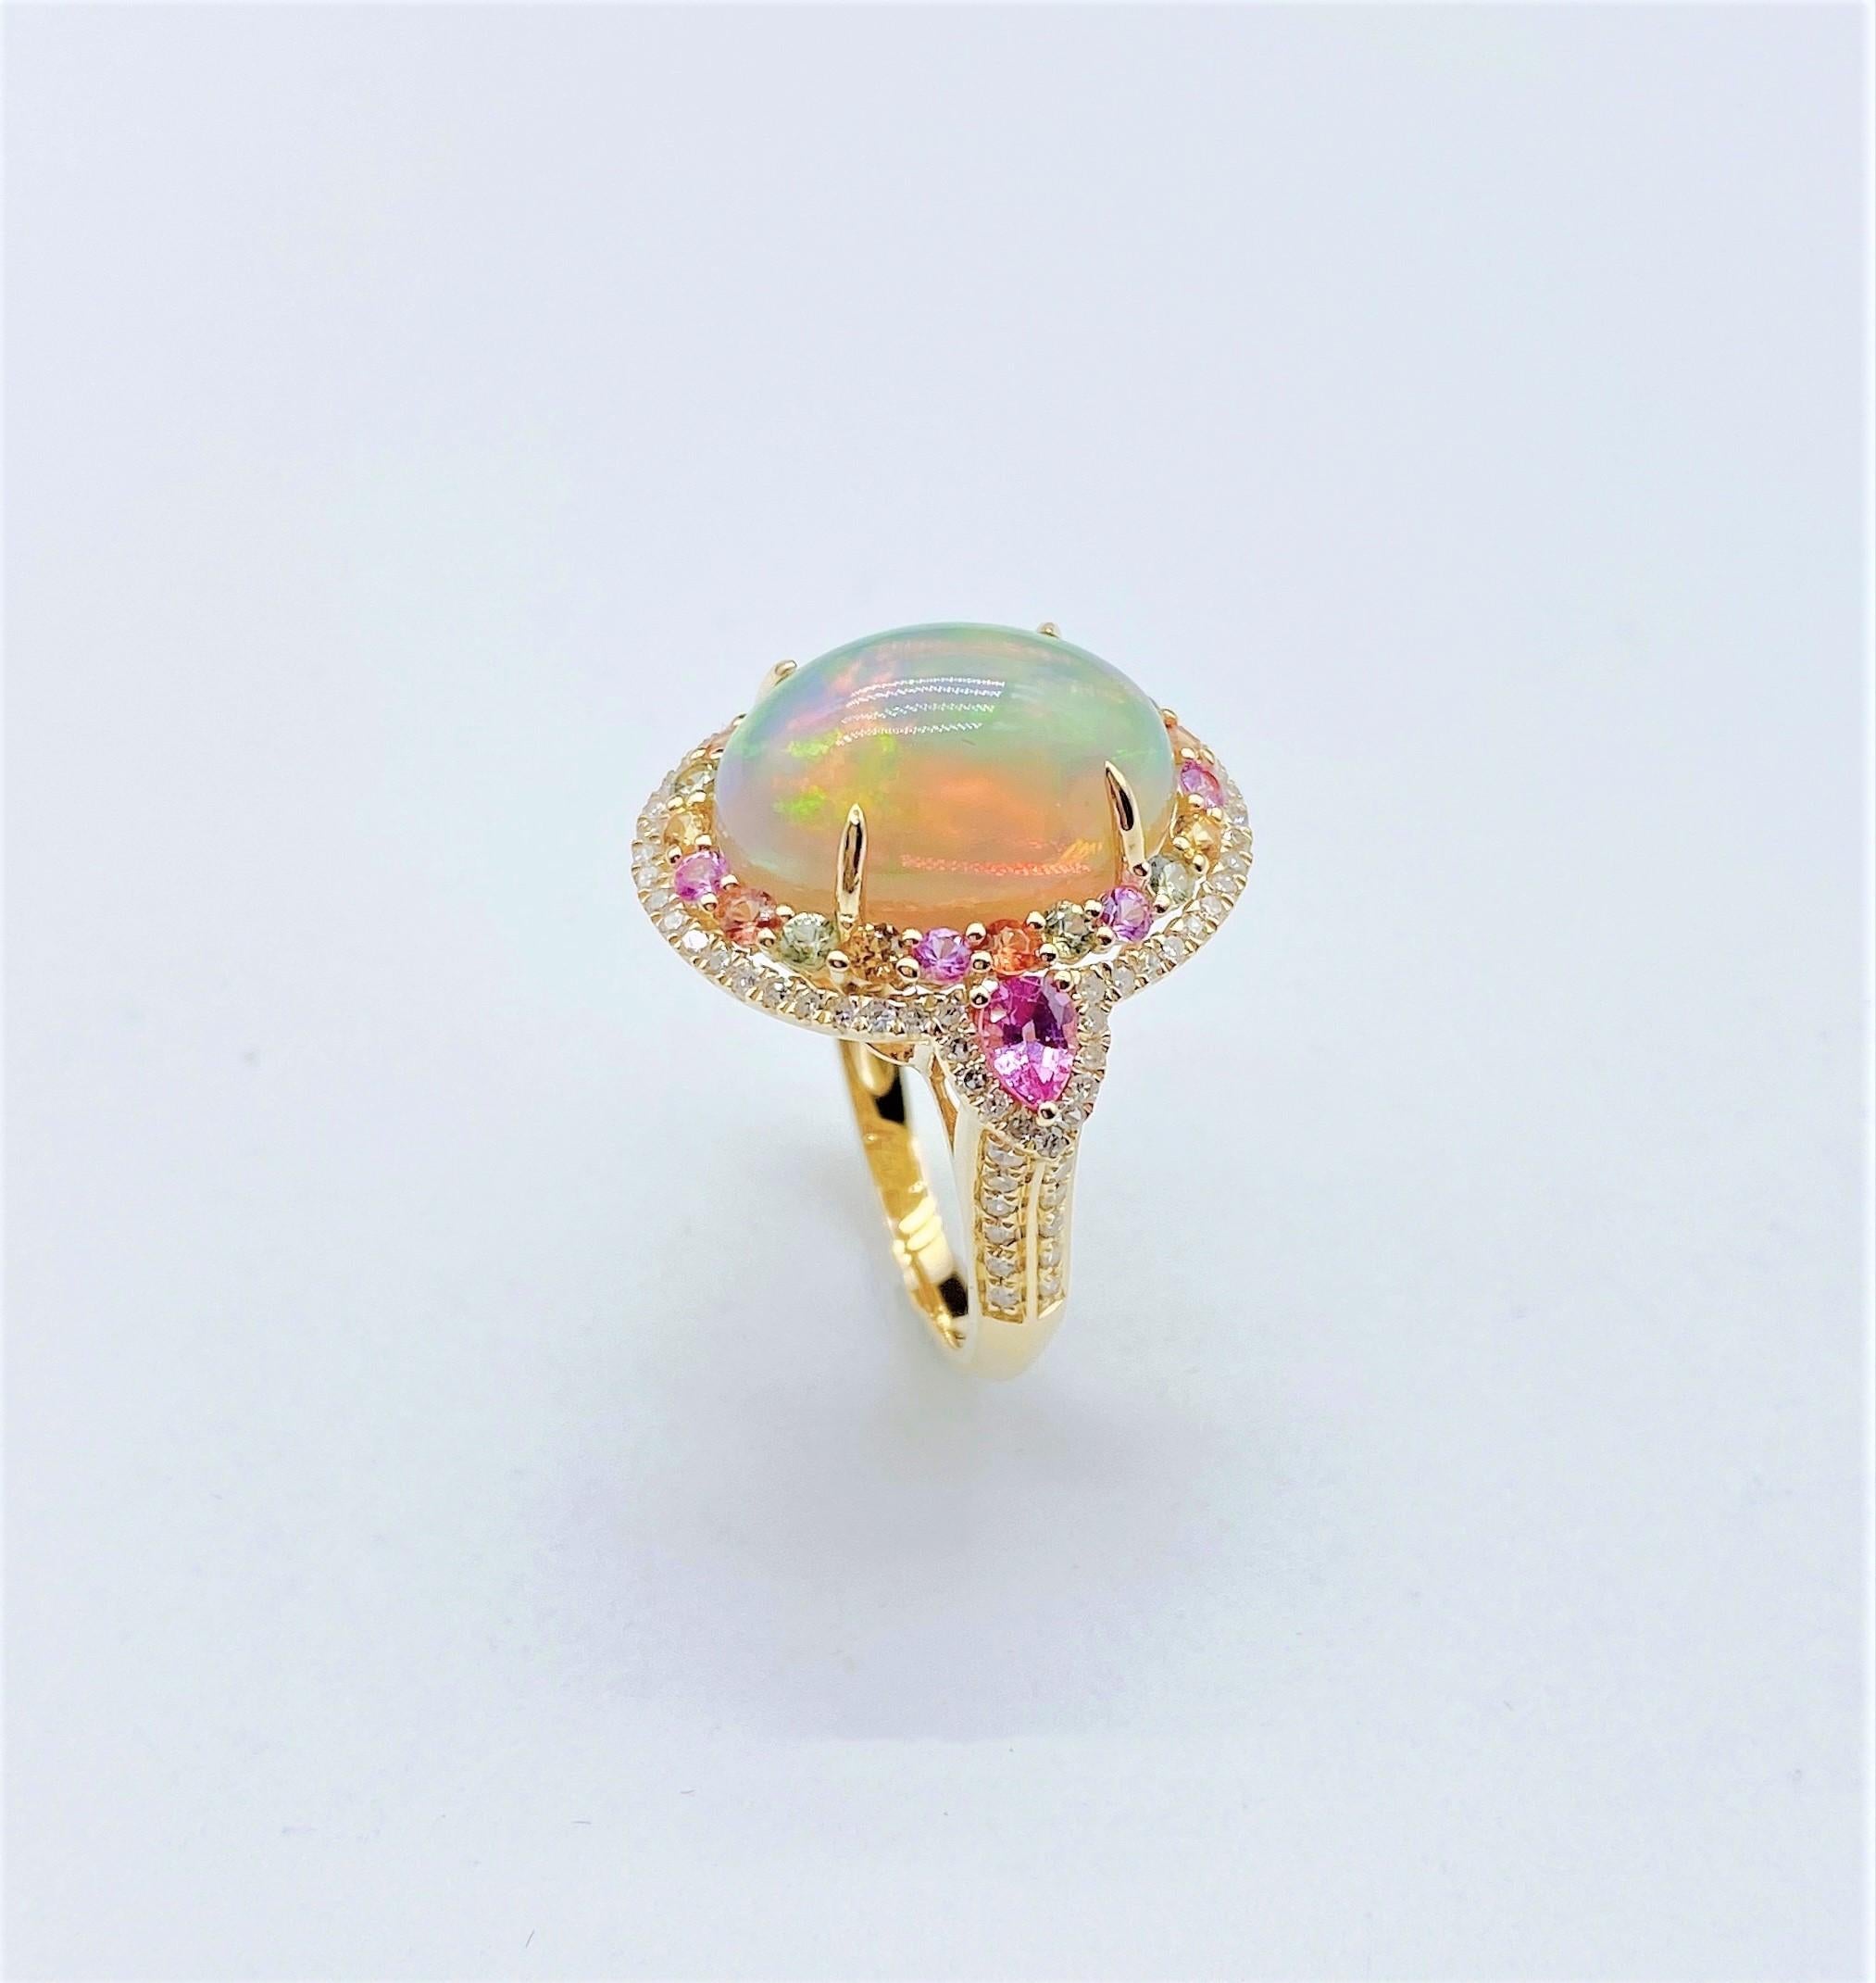 Der folgende Artikel, den wir anbieten, ist ein seltener wichtiger strahlender 18KT Gold großer feuriger weißer Opal Diamant rosa Saphir Ring. Der Ring besteht aus einem LARGE Gorgeous Fancy Fiery White Rainbow Opal, umgeben von einem schönen Halo